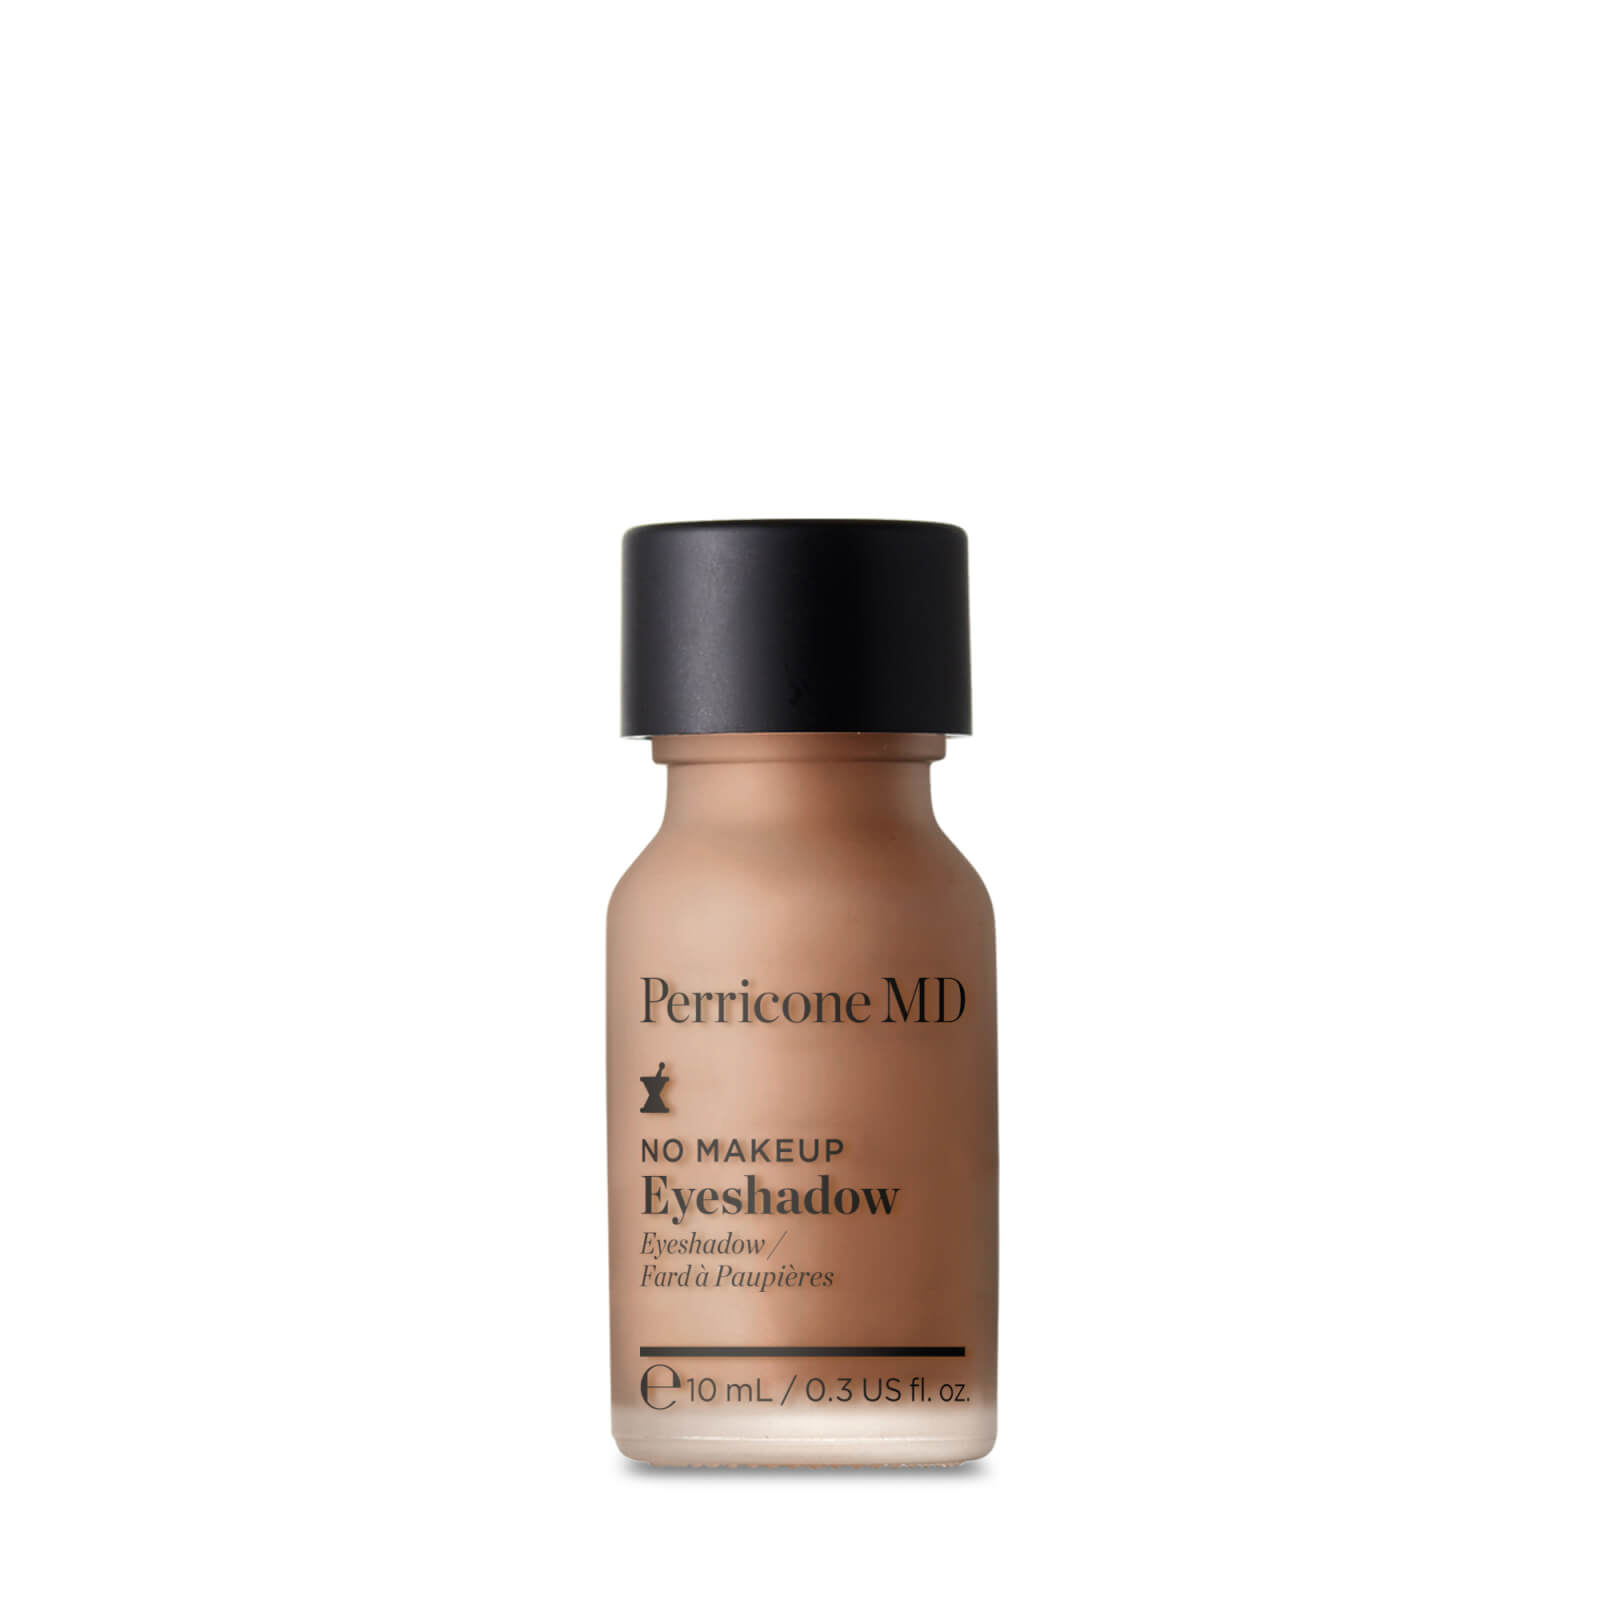 Perricone MD No Makeup Eyeshadow - Shade 3